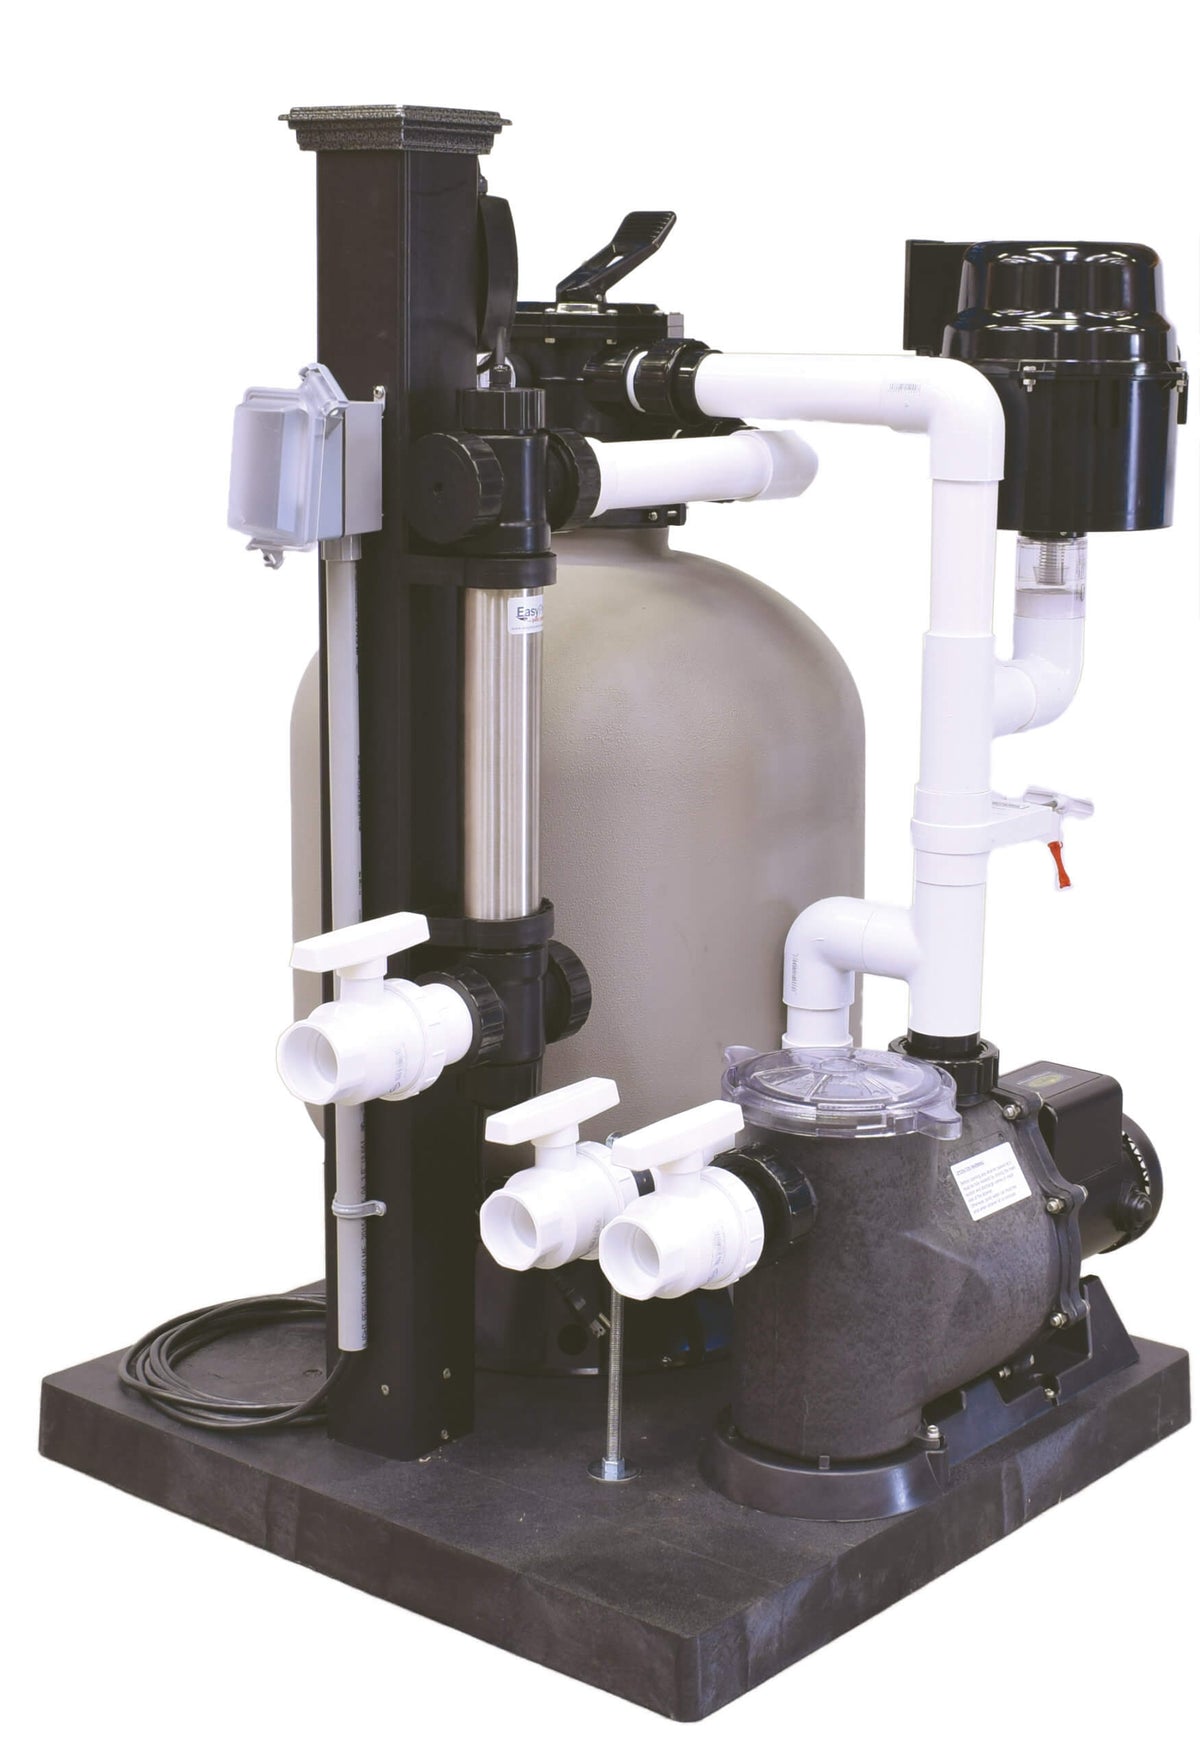 EasyPro Skid Mount Filtration System - 6,000 gallon